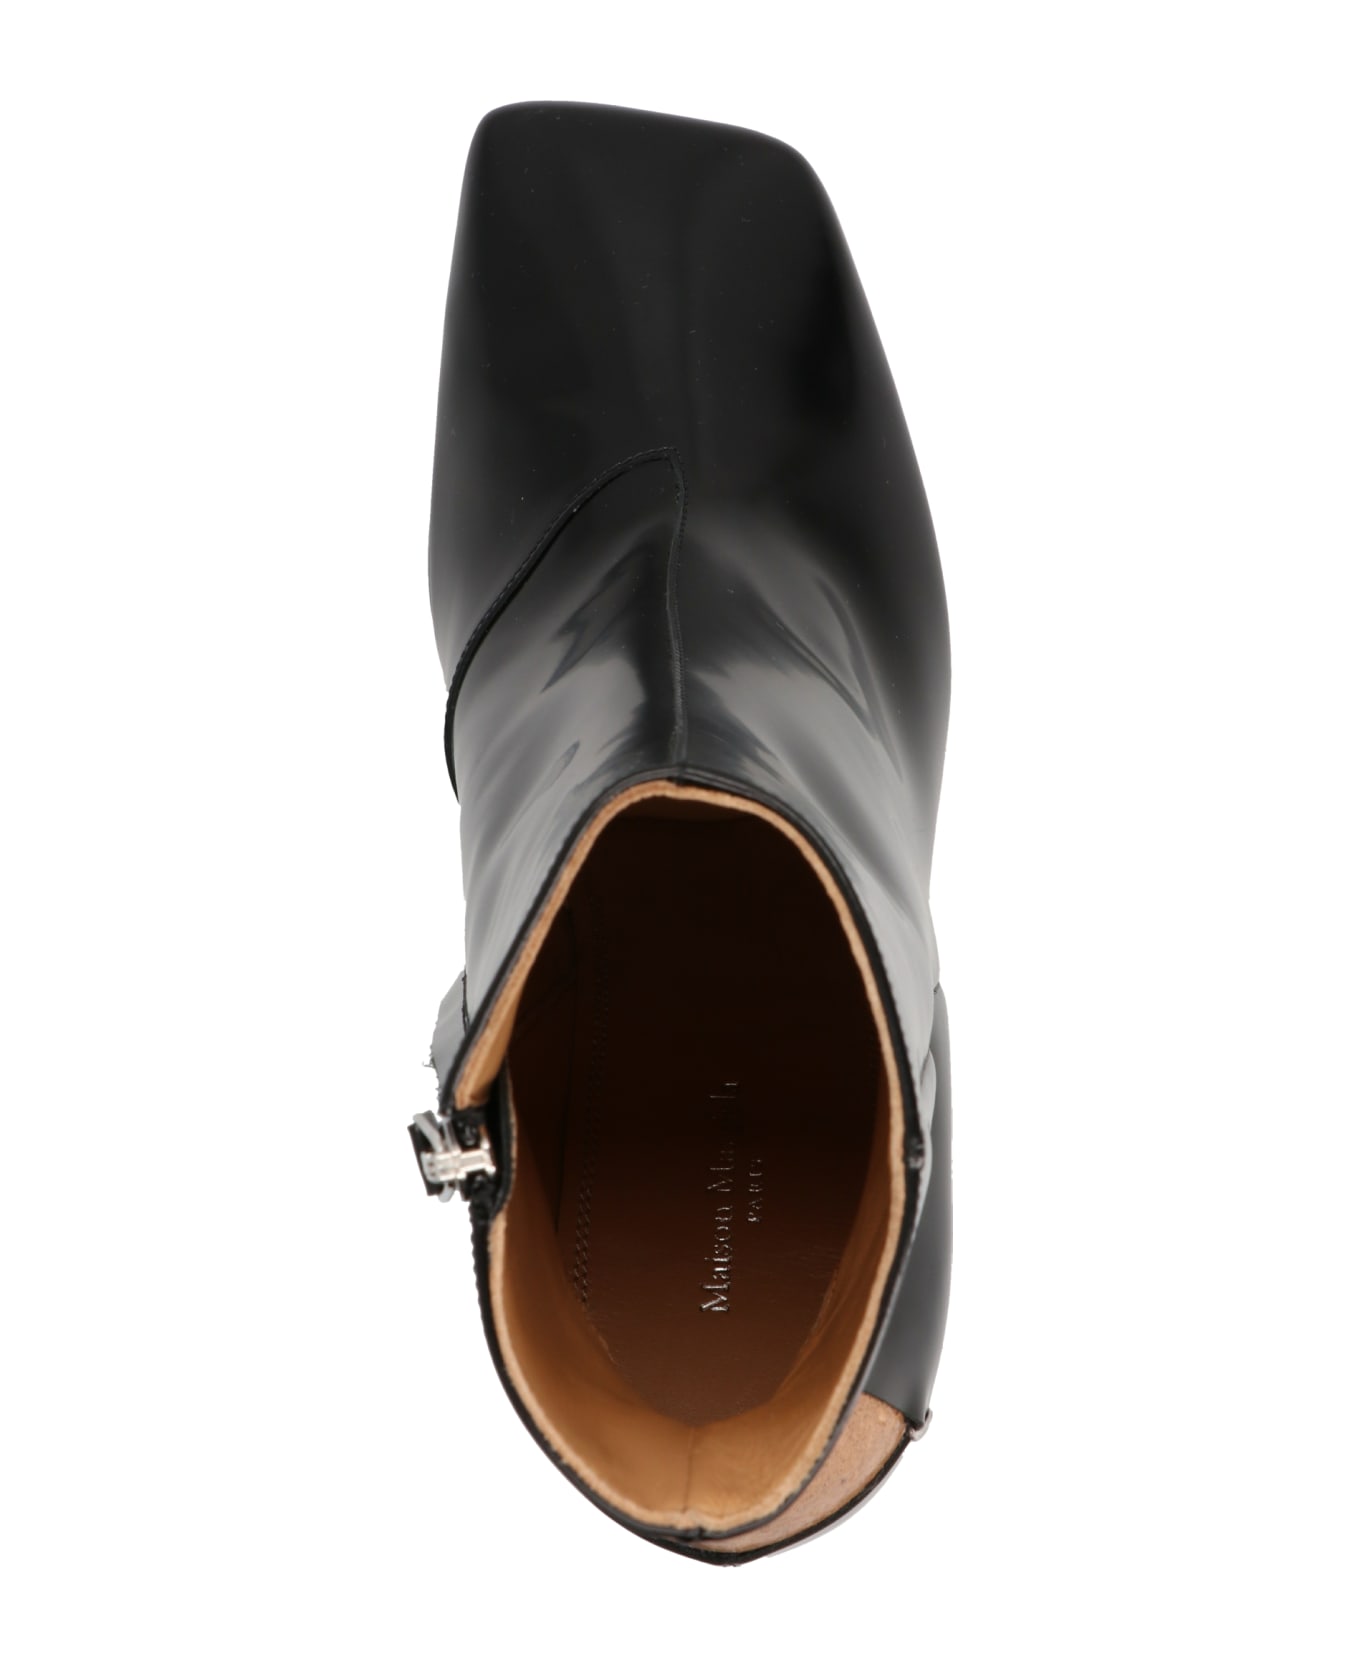 Maison Margiela Heel Detail Ankle Boots - BLACK